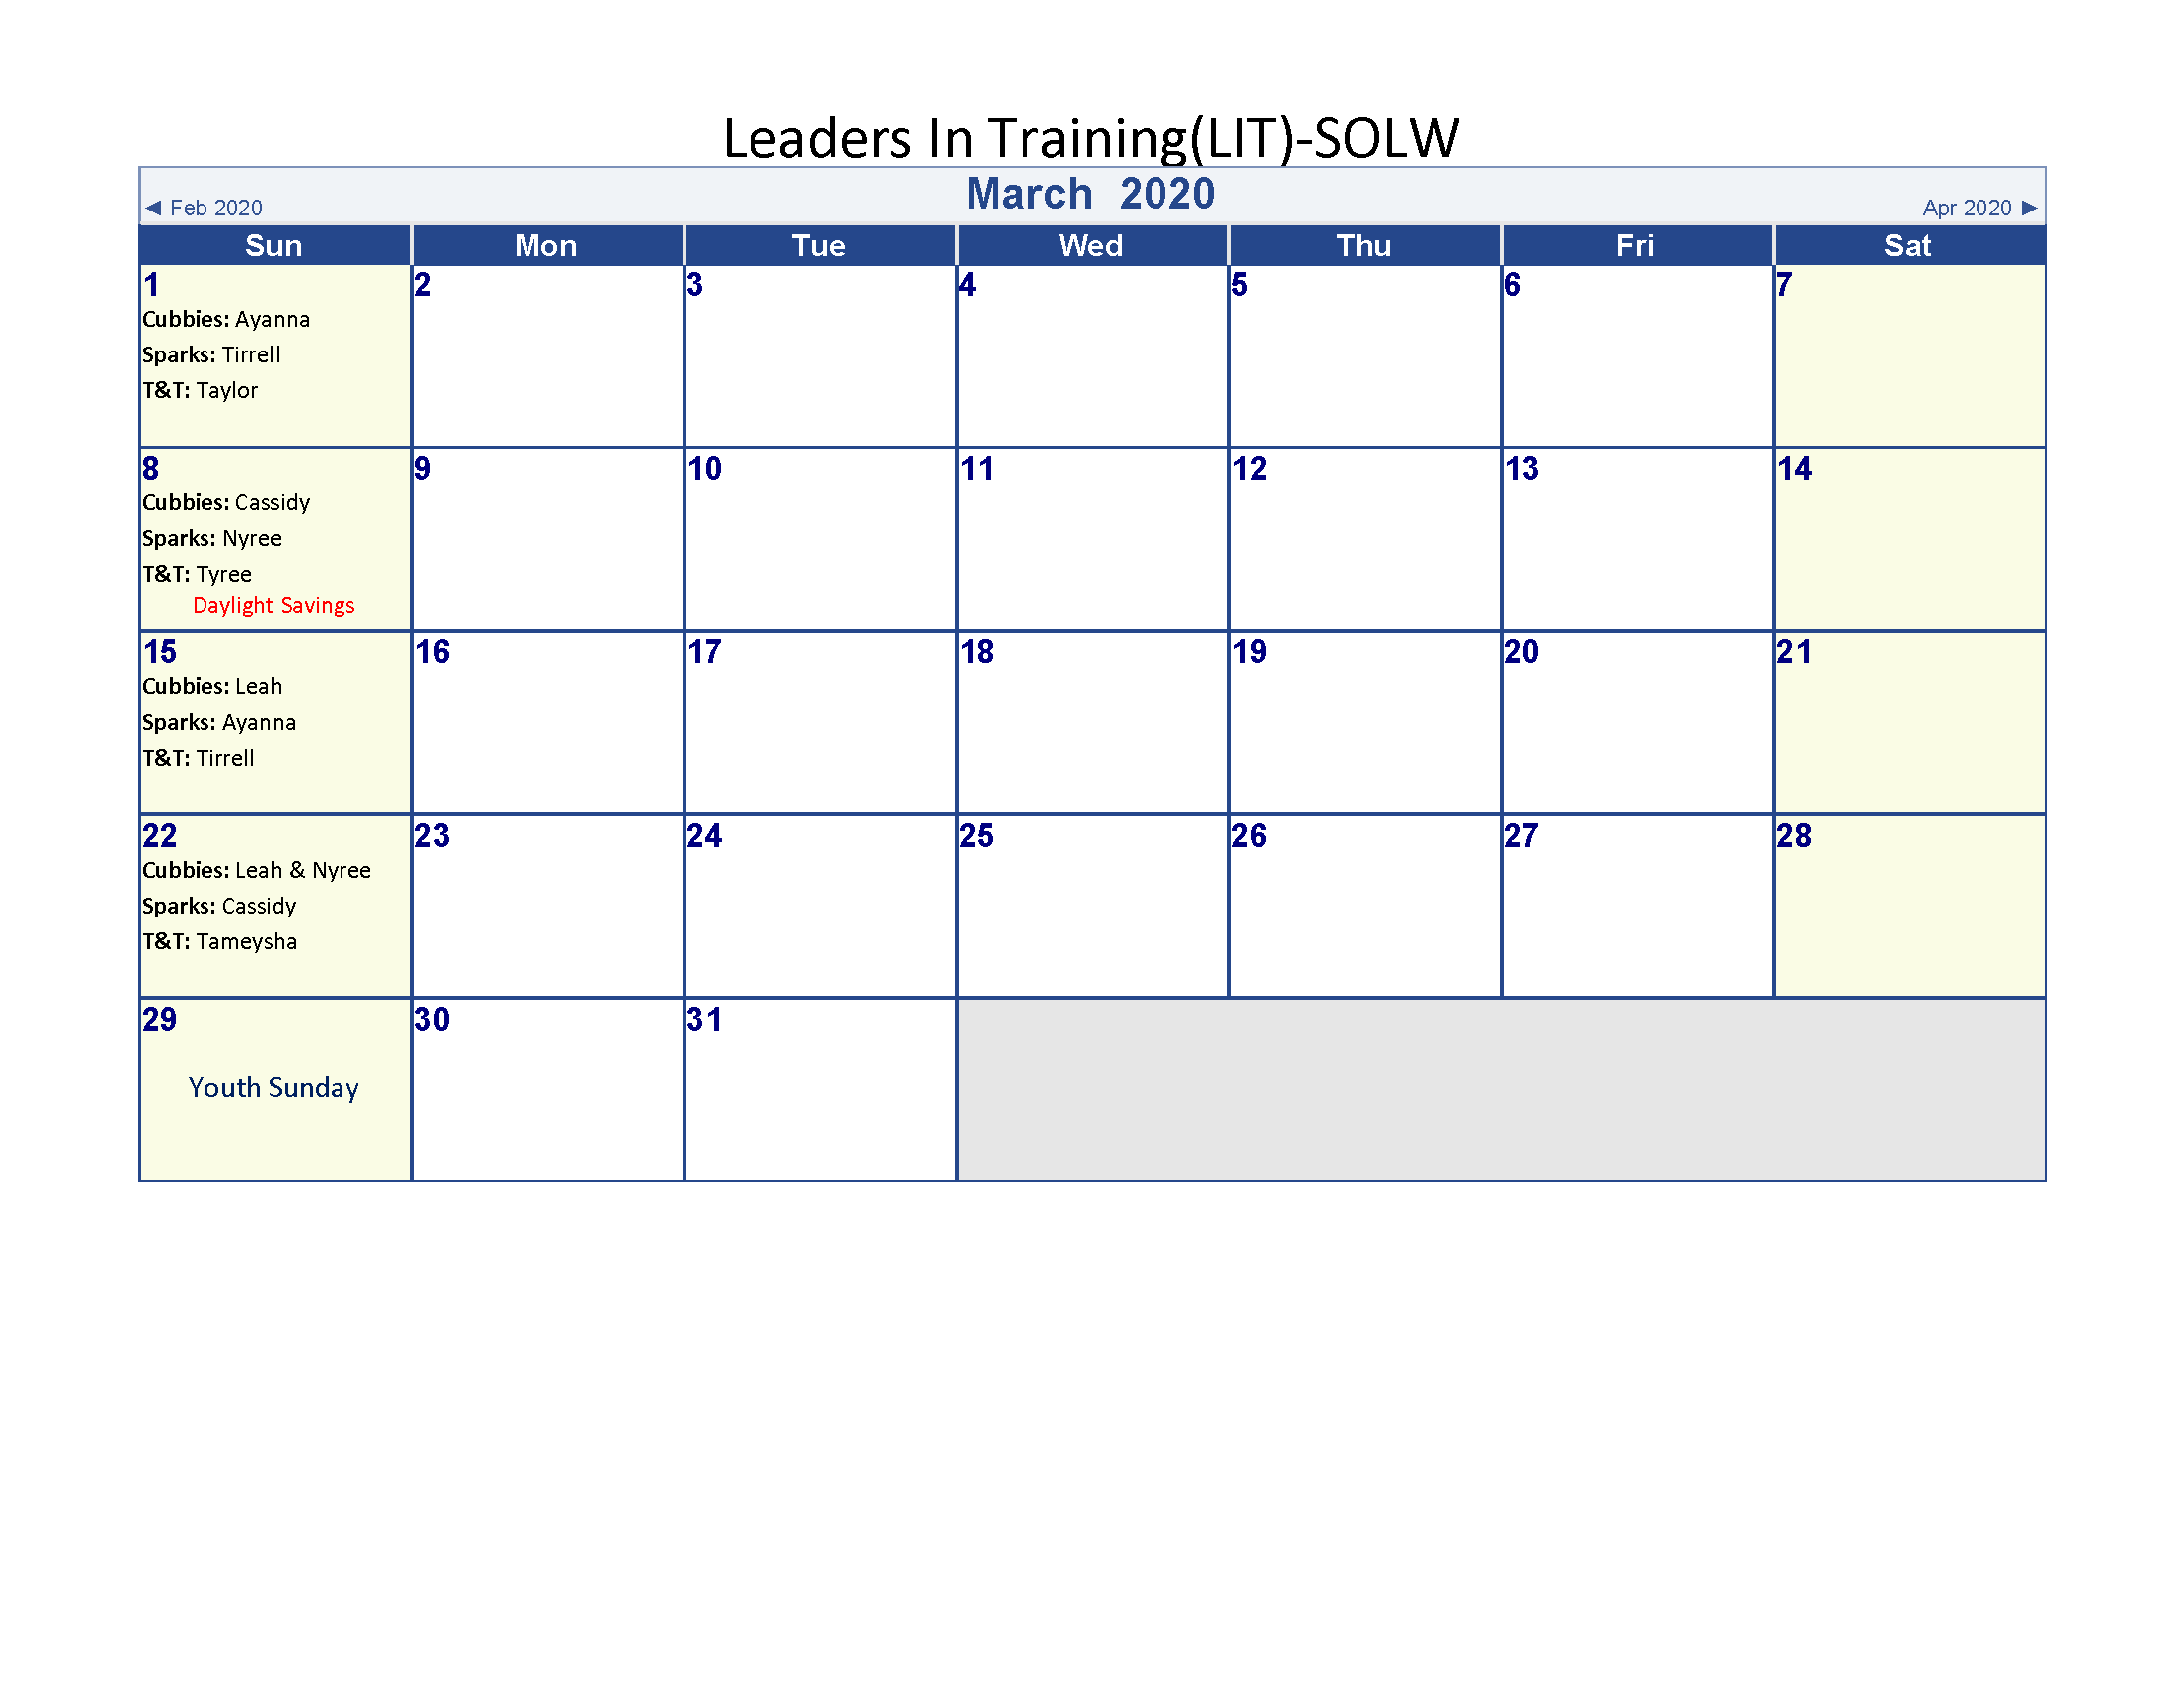 Leaders in Training calendar